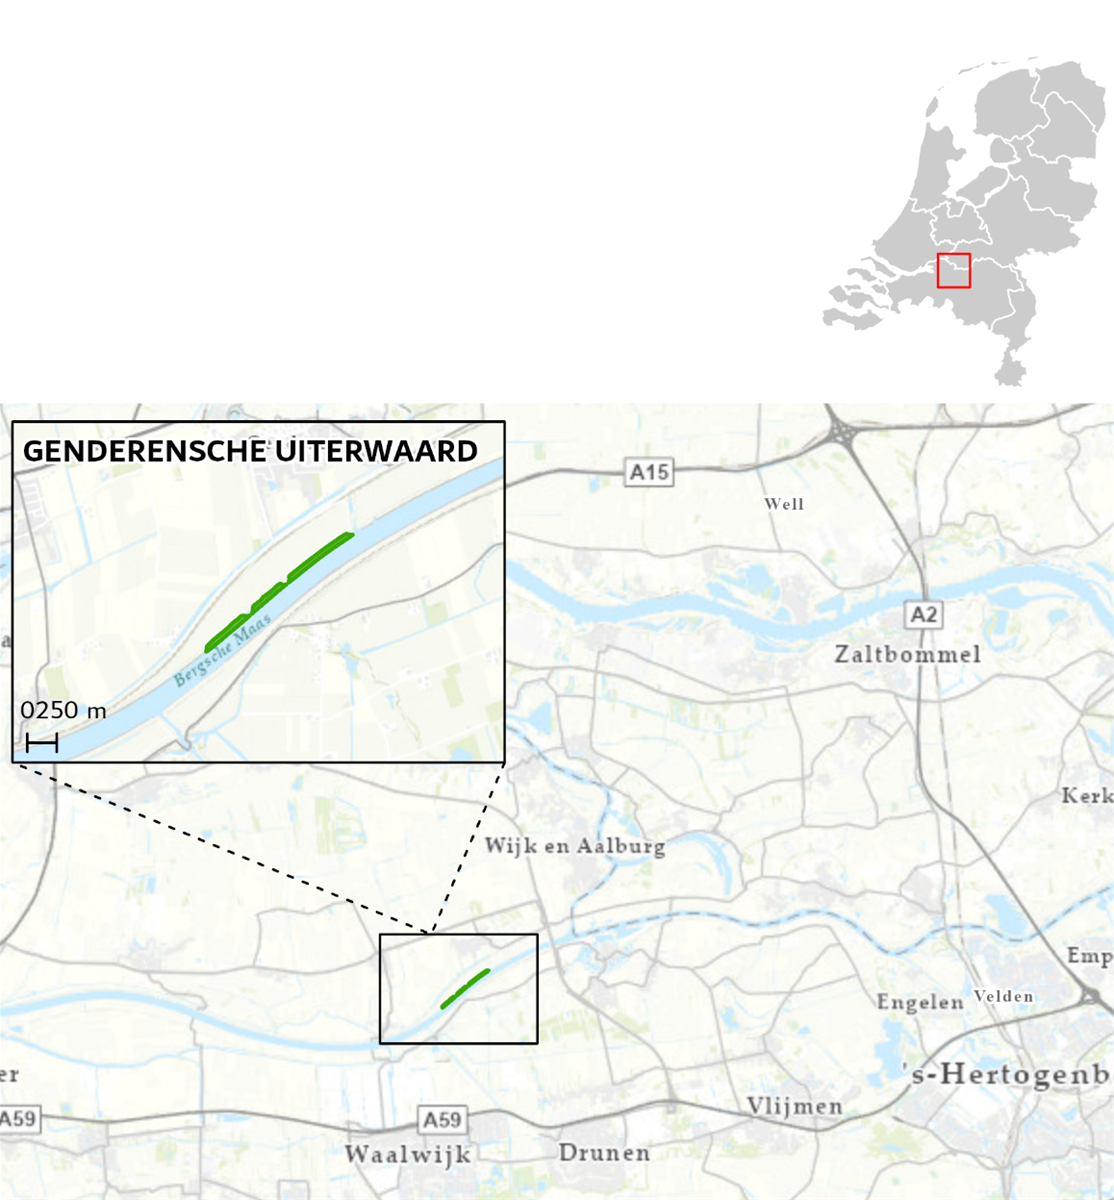 Kaart de ligging van het maatregelgebied Genderensche uiterwaard langs de Bergsche Maas aangegeven door middel van een groen vlak.